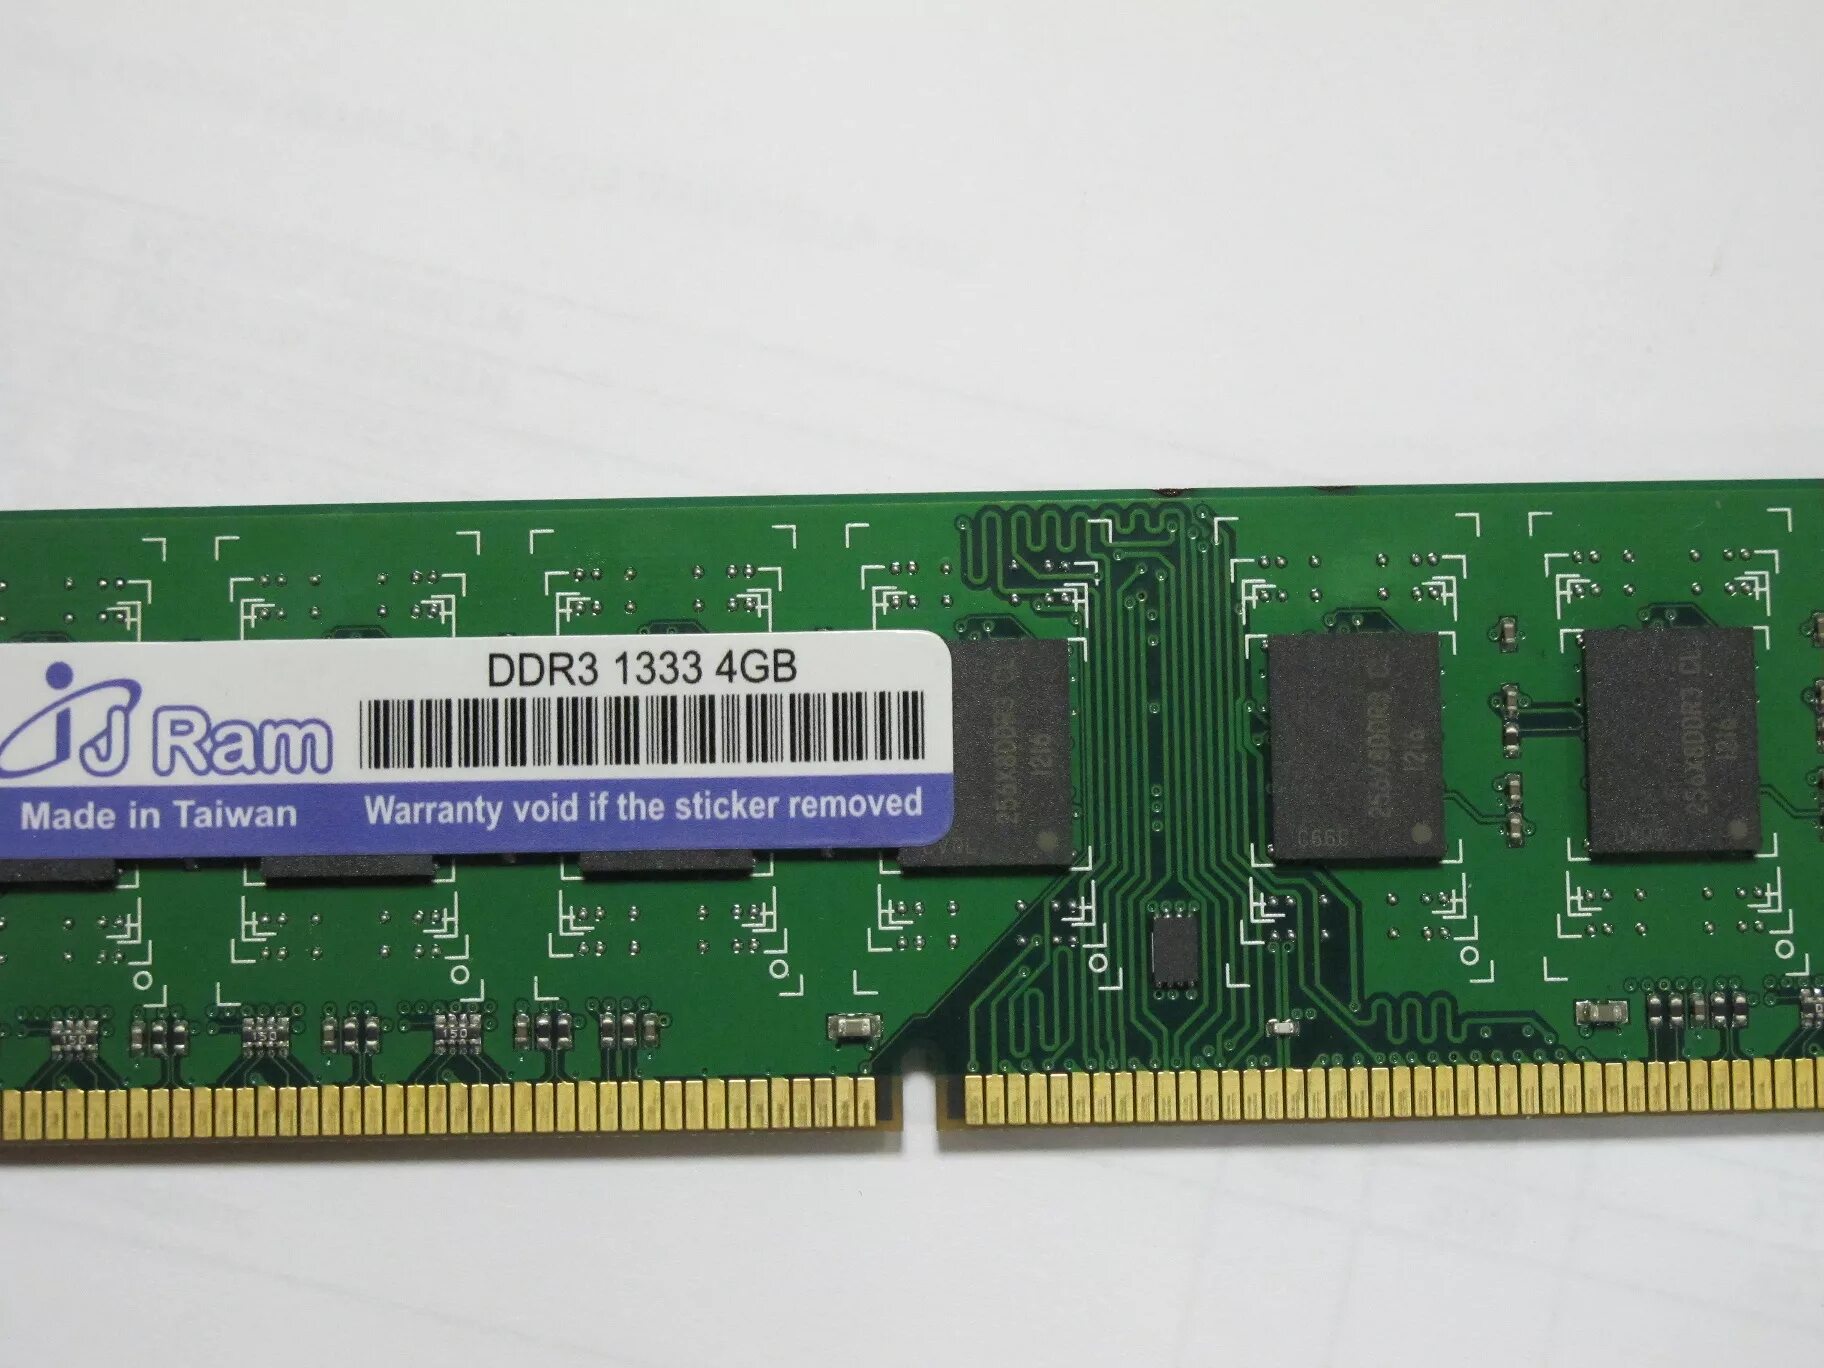 IJ Ram ddr3 1333 2gb. JRAM ddr3 1333 2gb. Оперативная память 4 ГБ I J Ram. Память ddr3 с 1333 стандартная частота.